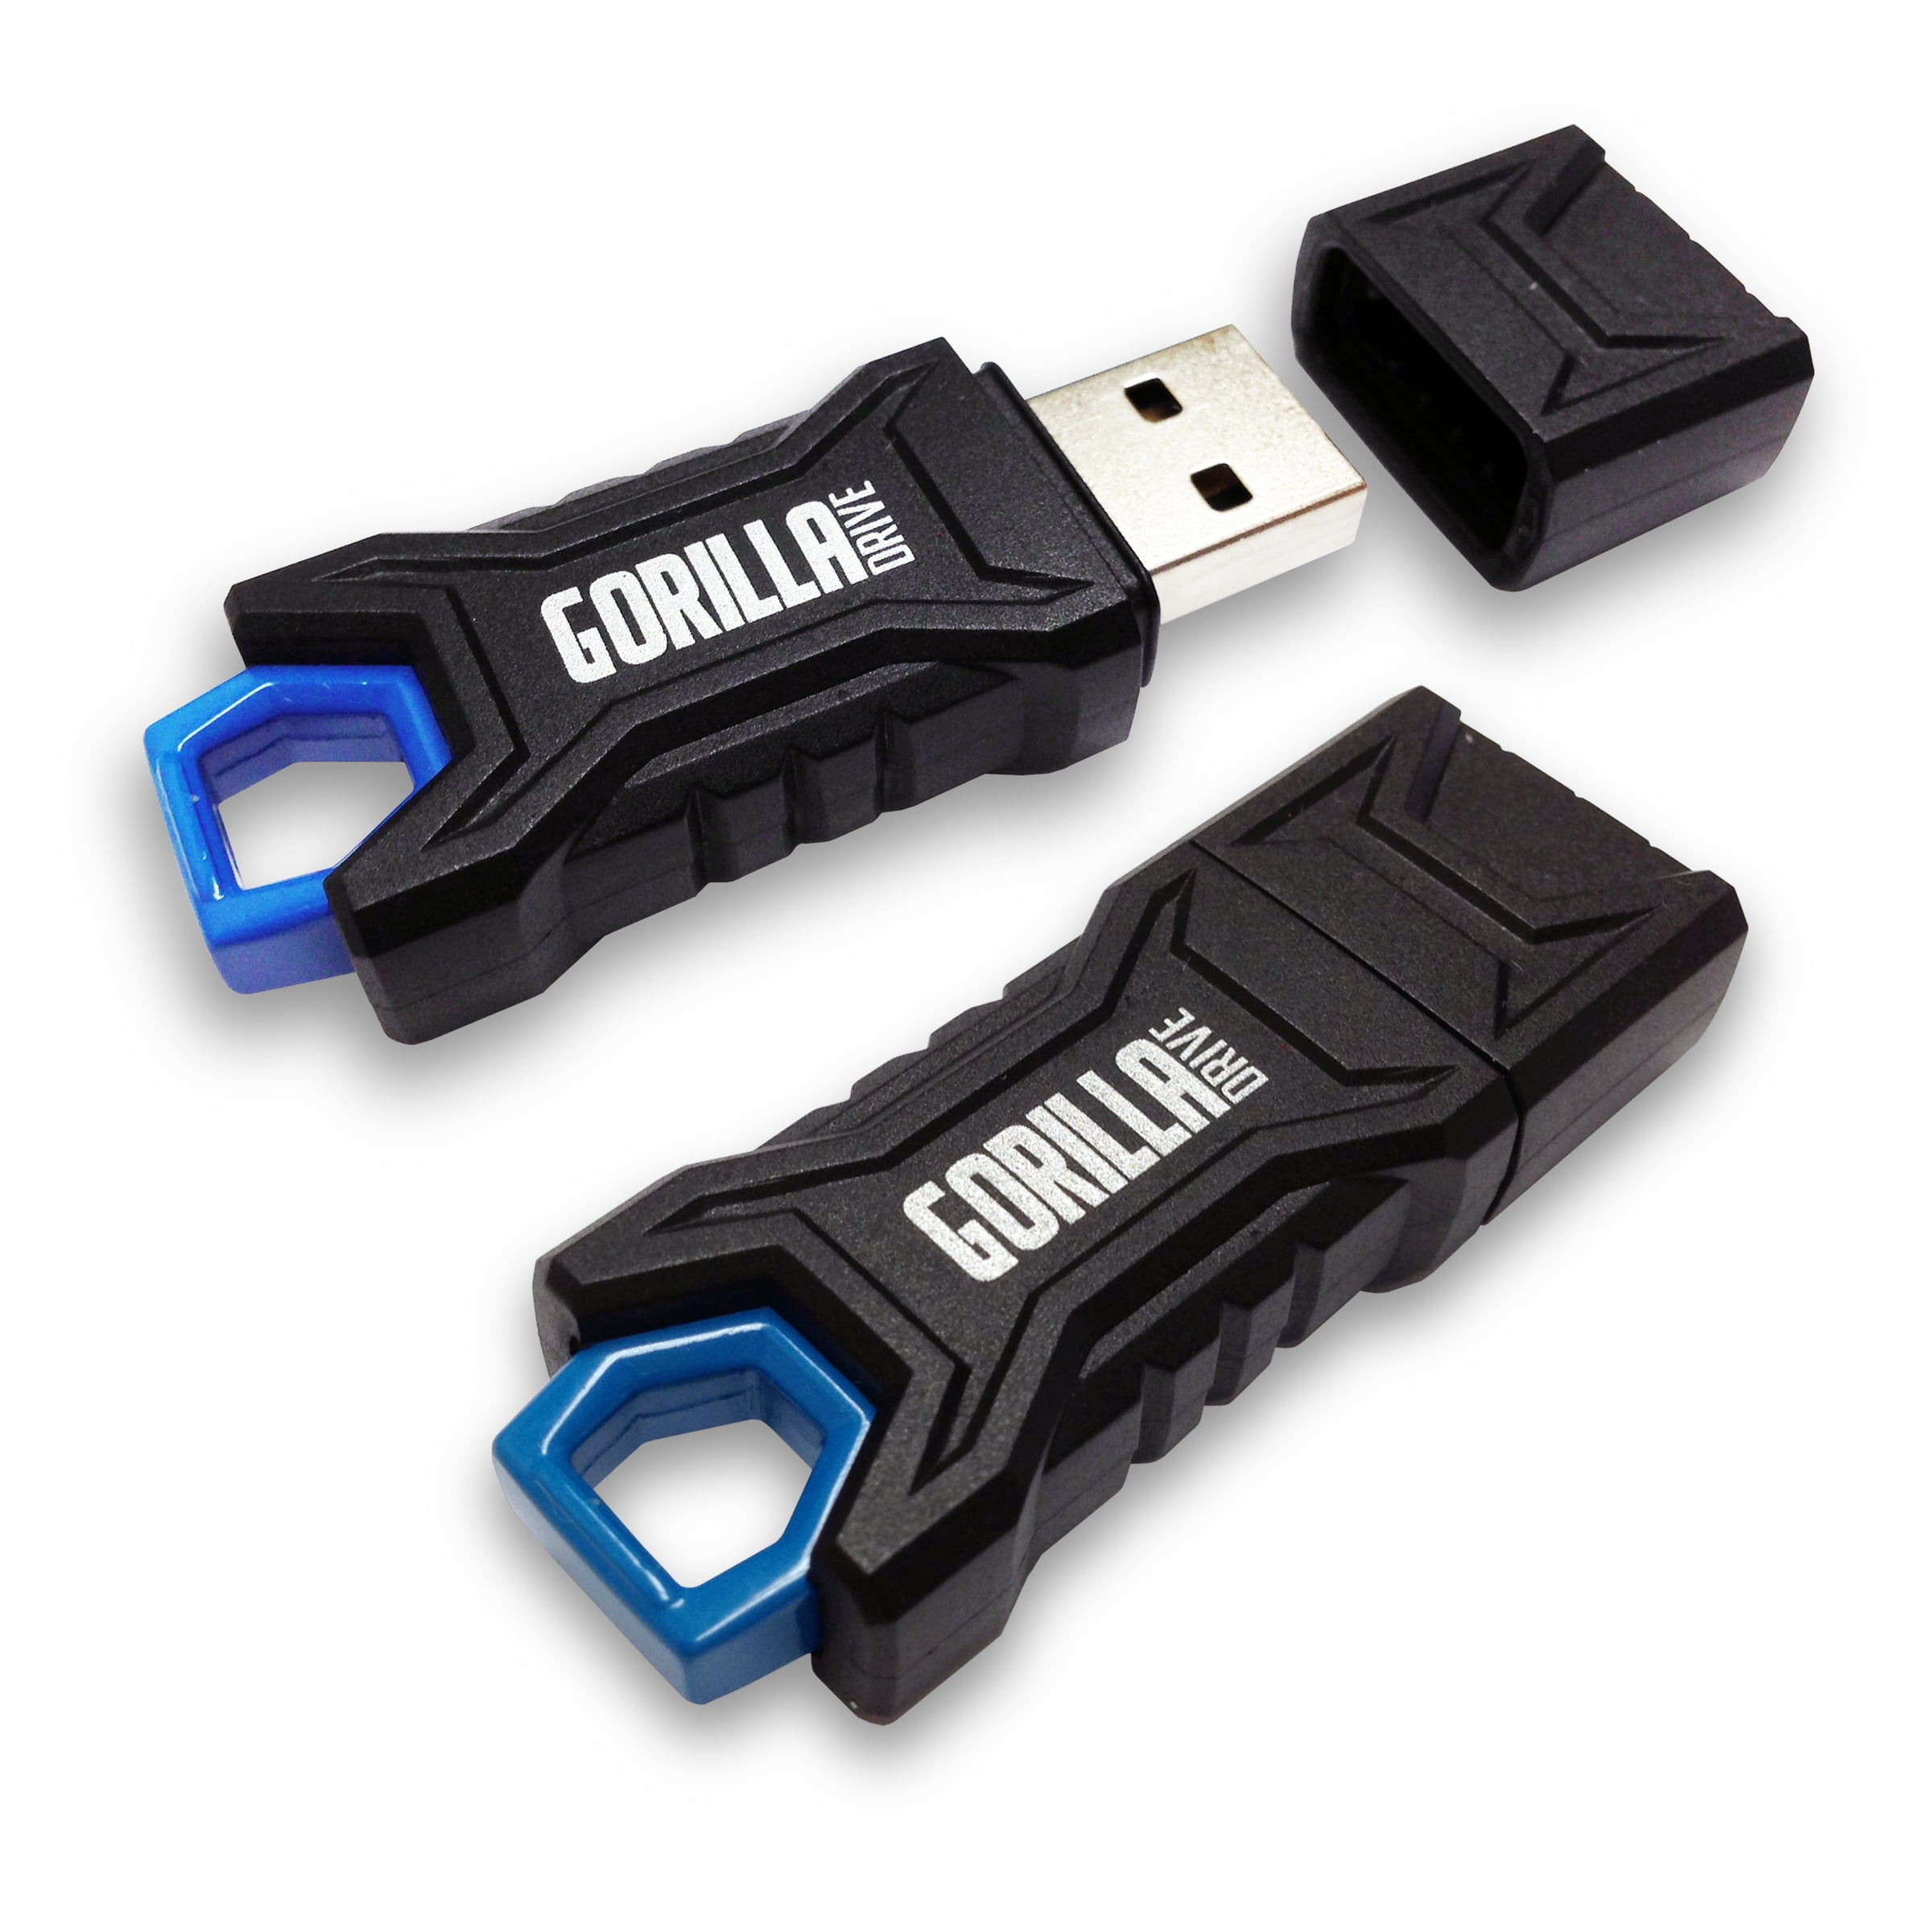 USB Flash Drive 32gb. Samsung Flash Drive. USB Flash Drive Repair Tool. Rapid Metal USB Flash Drive ezashy. Купить usb drive